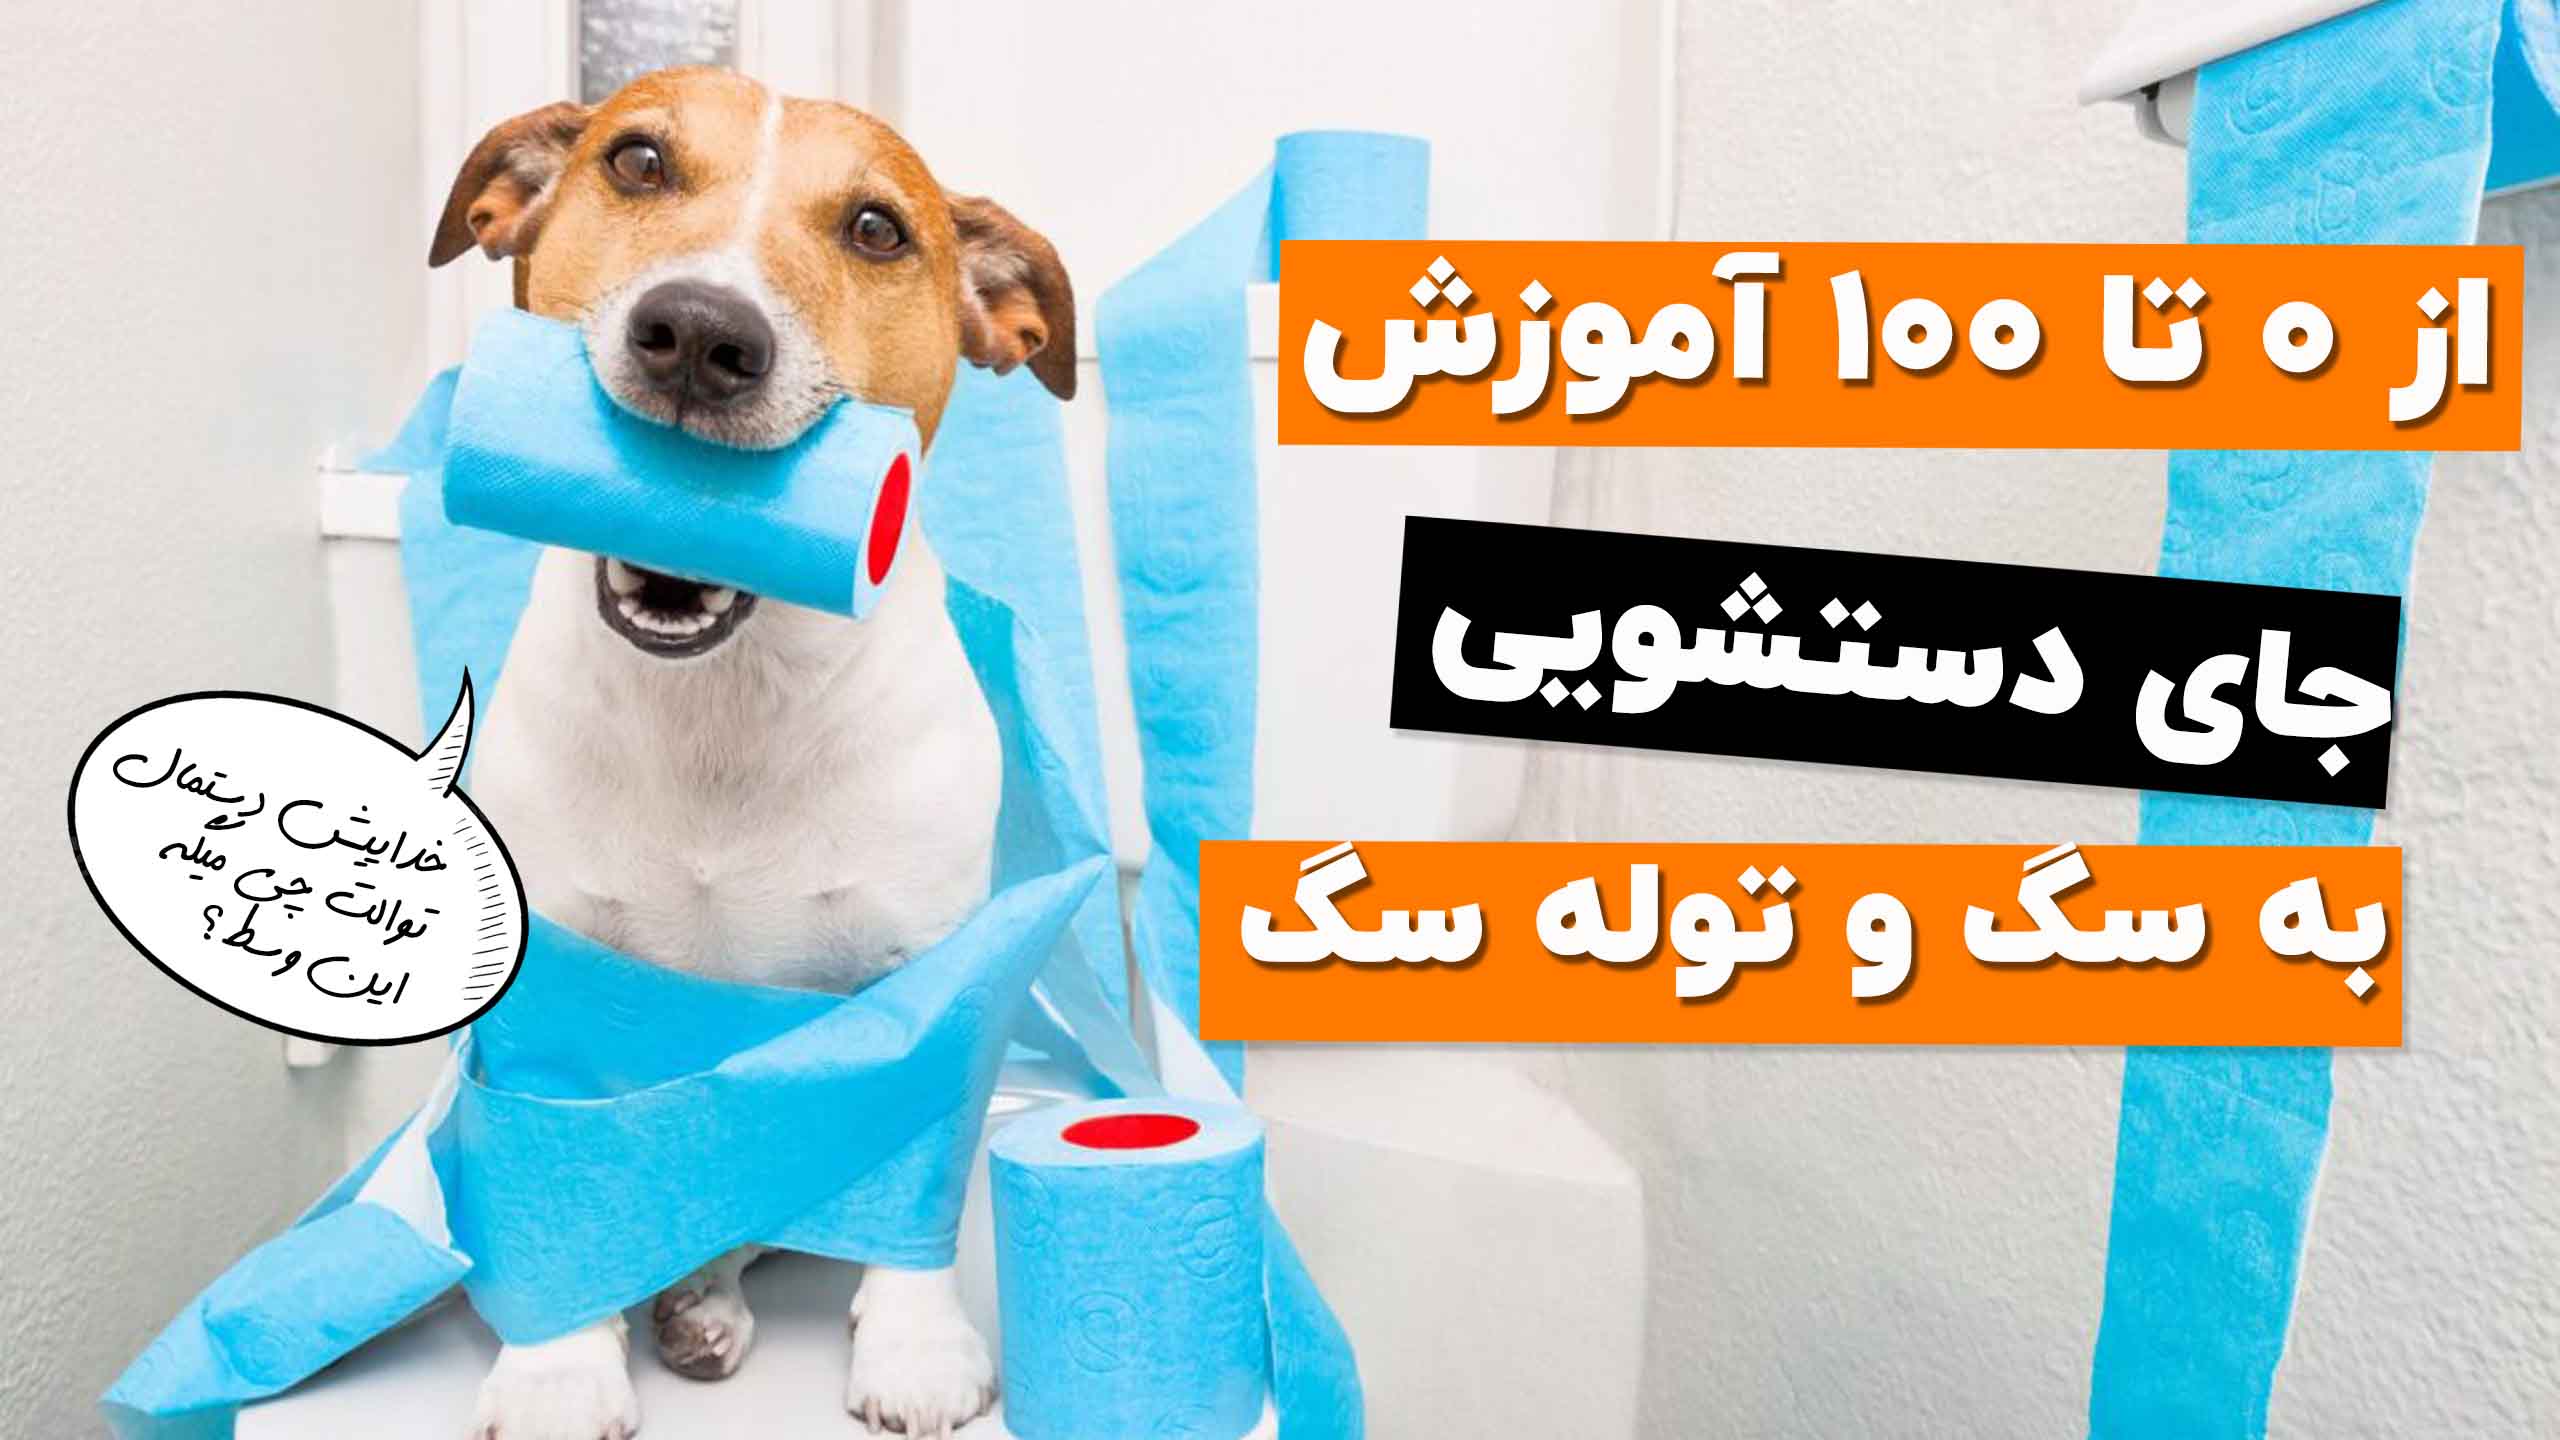 آموزش دستشویی به سگ